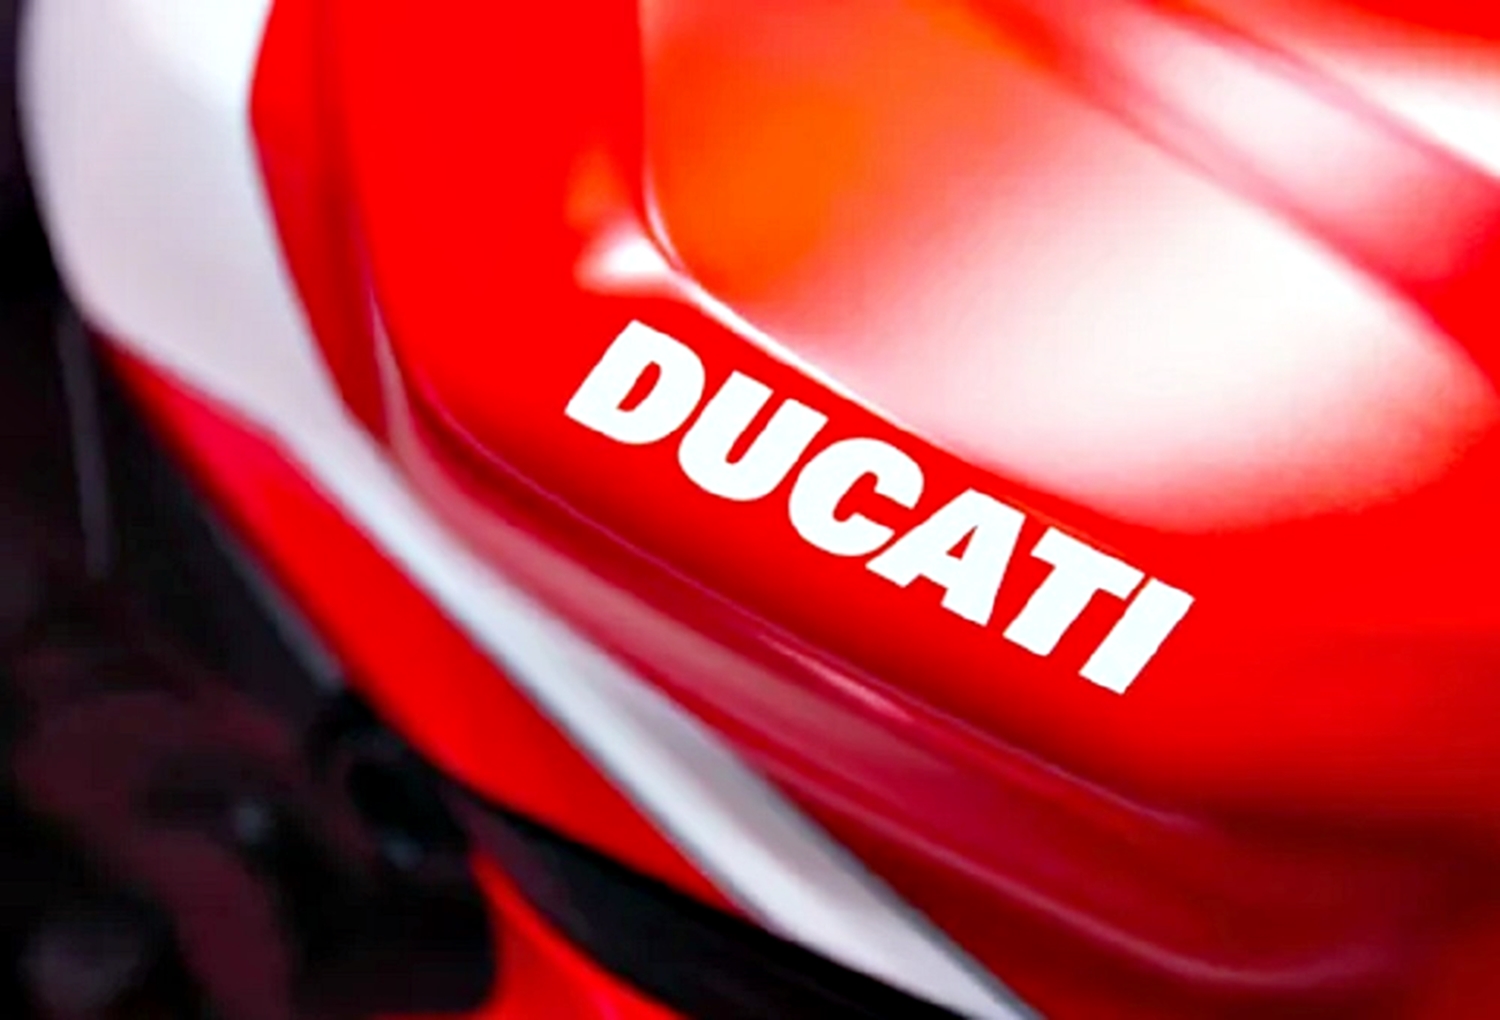 Logo Ducati.